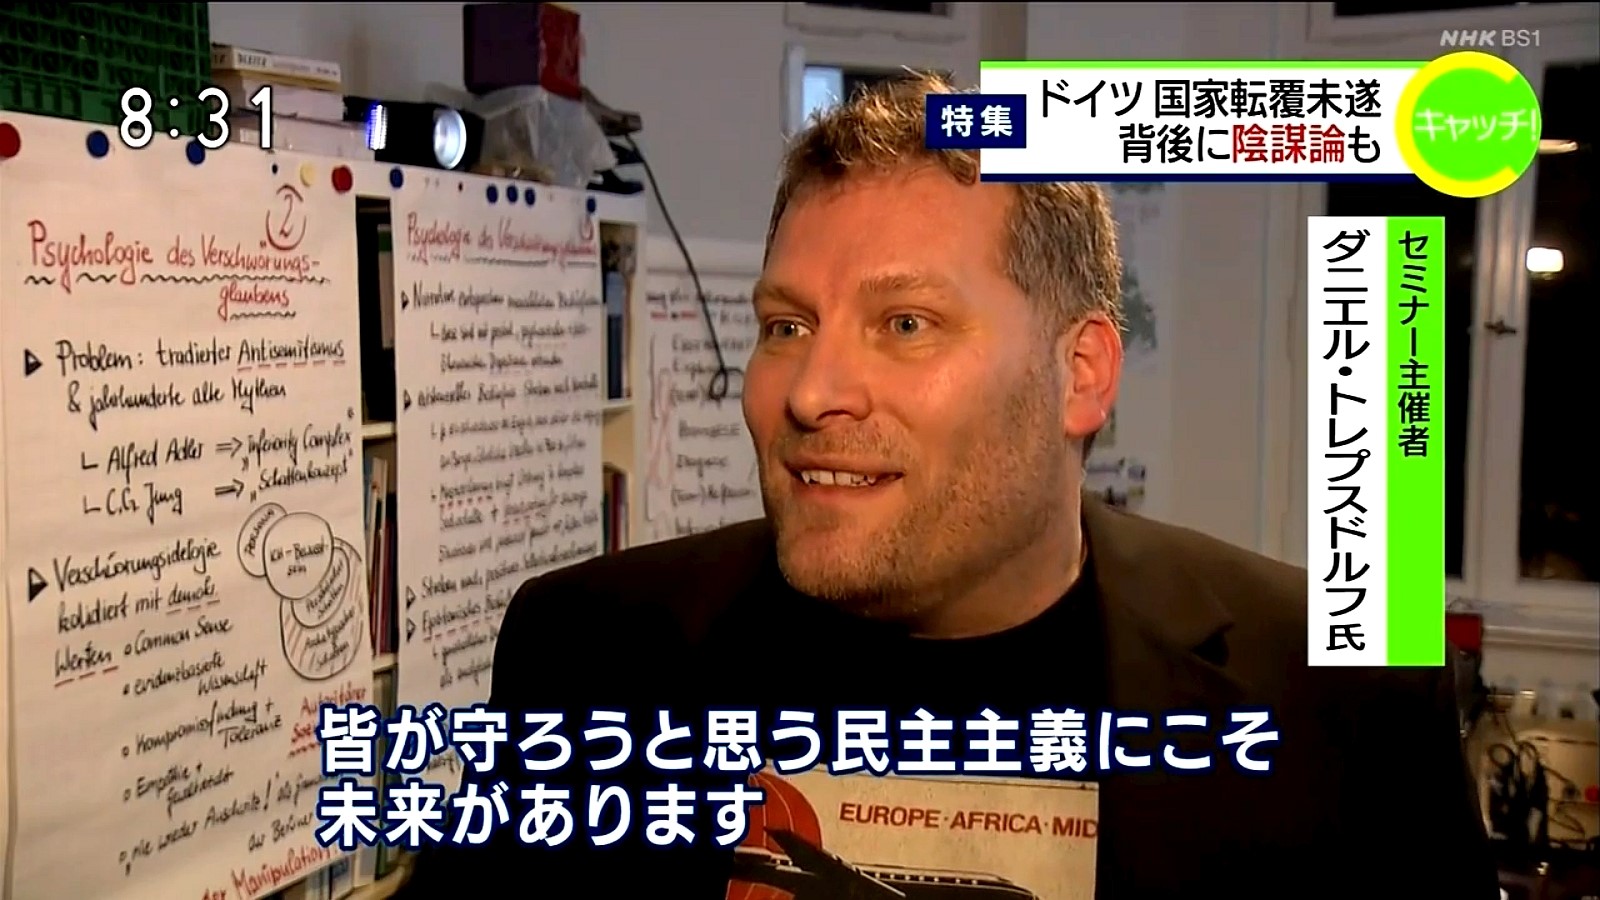 Daniel Trepsdorf, Mitarbeiter des Regionalzentrums für demokratische Kultur Westmecklenburg, wird im japanischen Fernsehen interviewt.